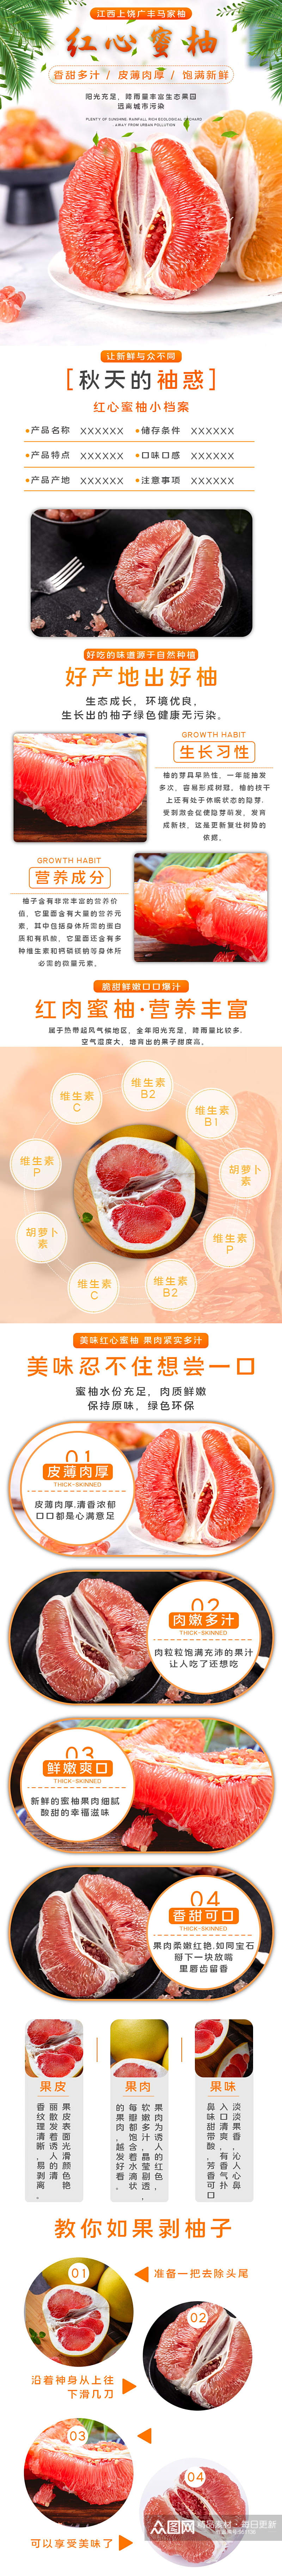 水果红心柚子淘宝生鲜水果详情页素材